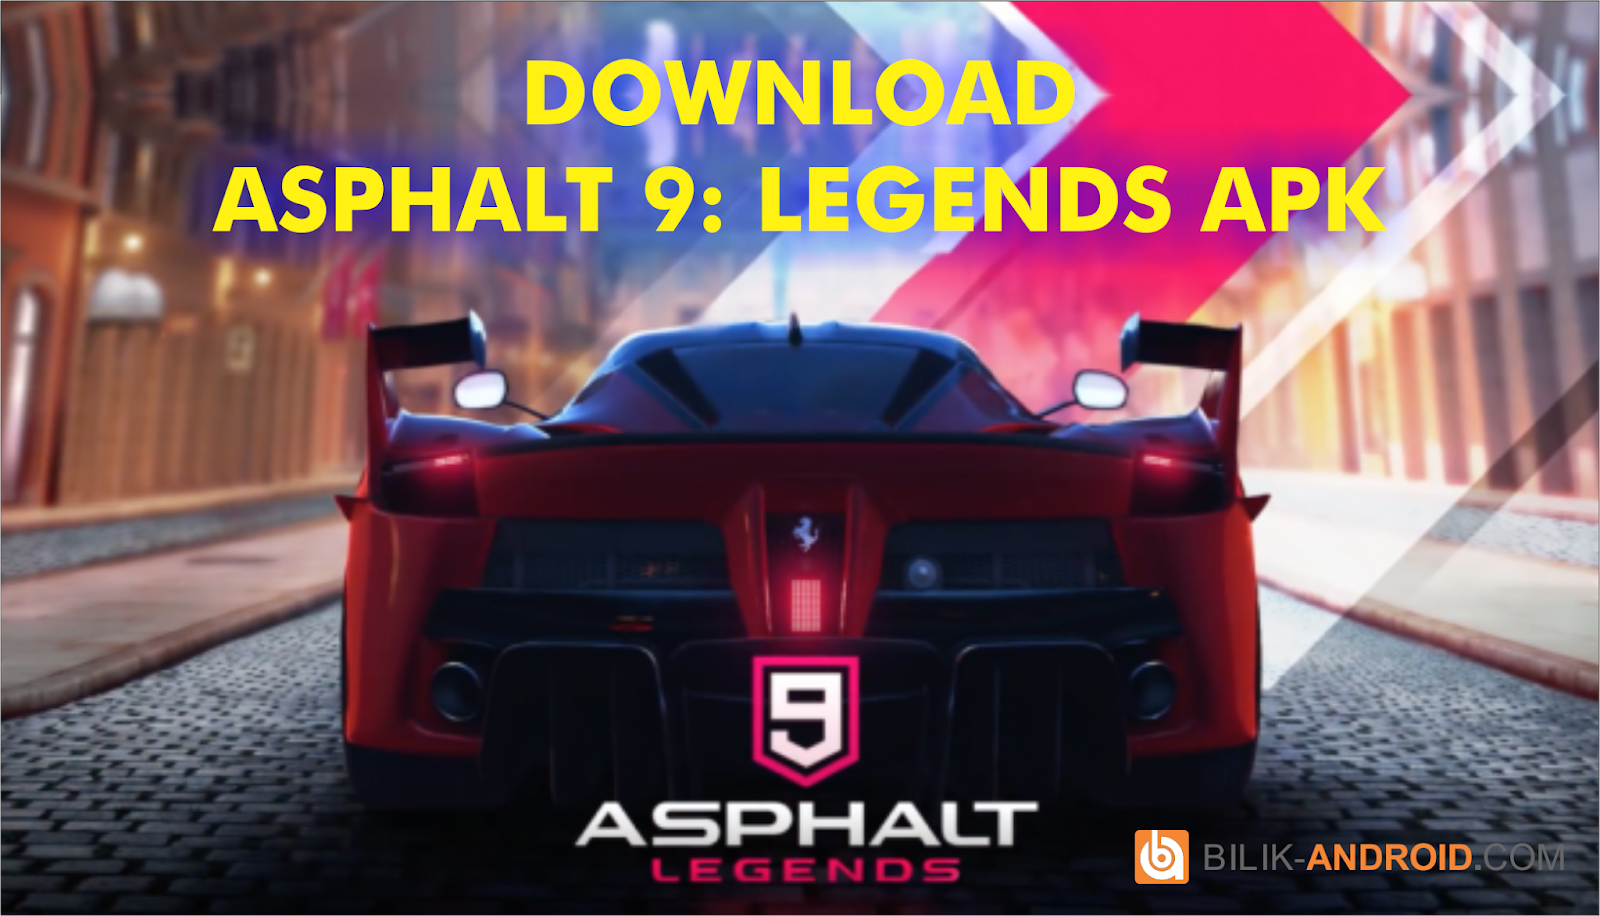 asphalt 9 legends apk download for android